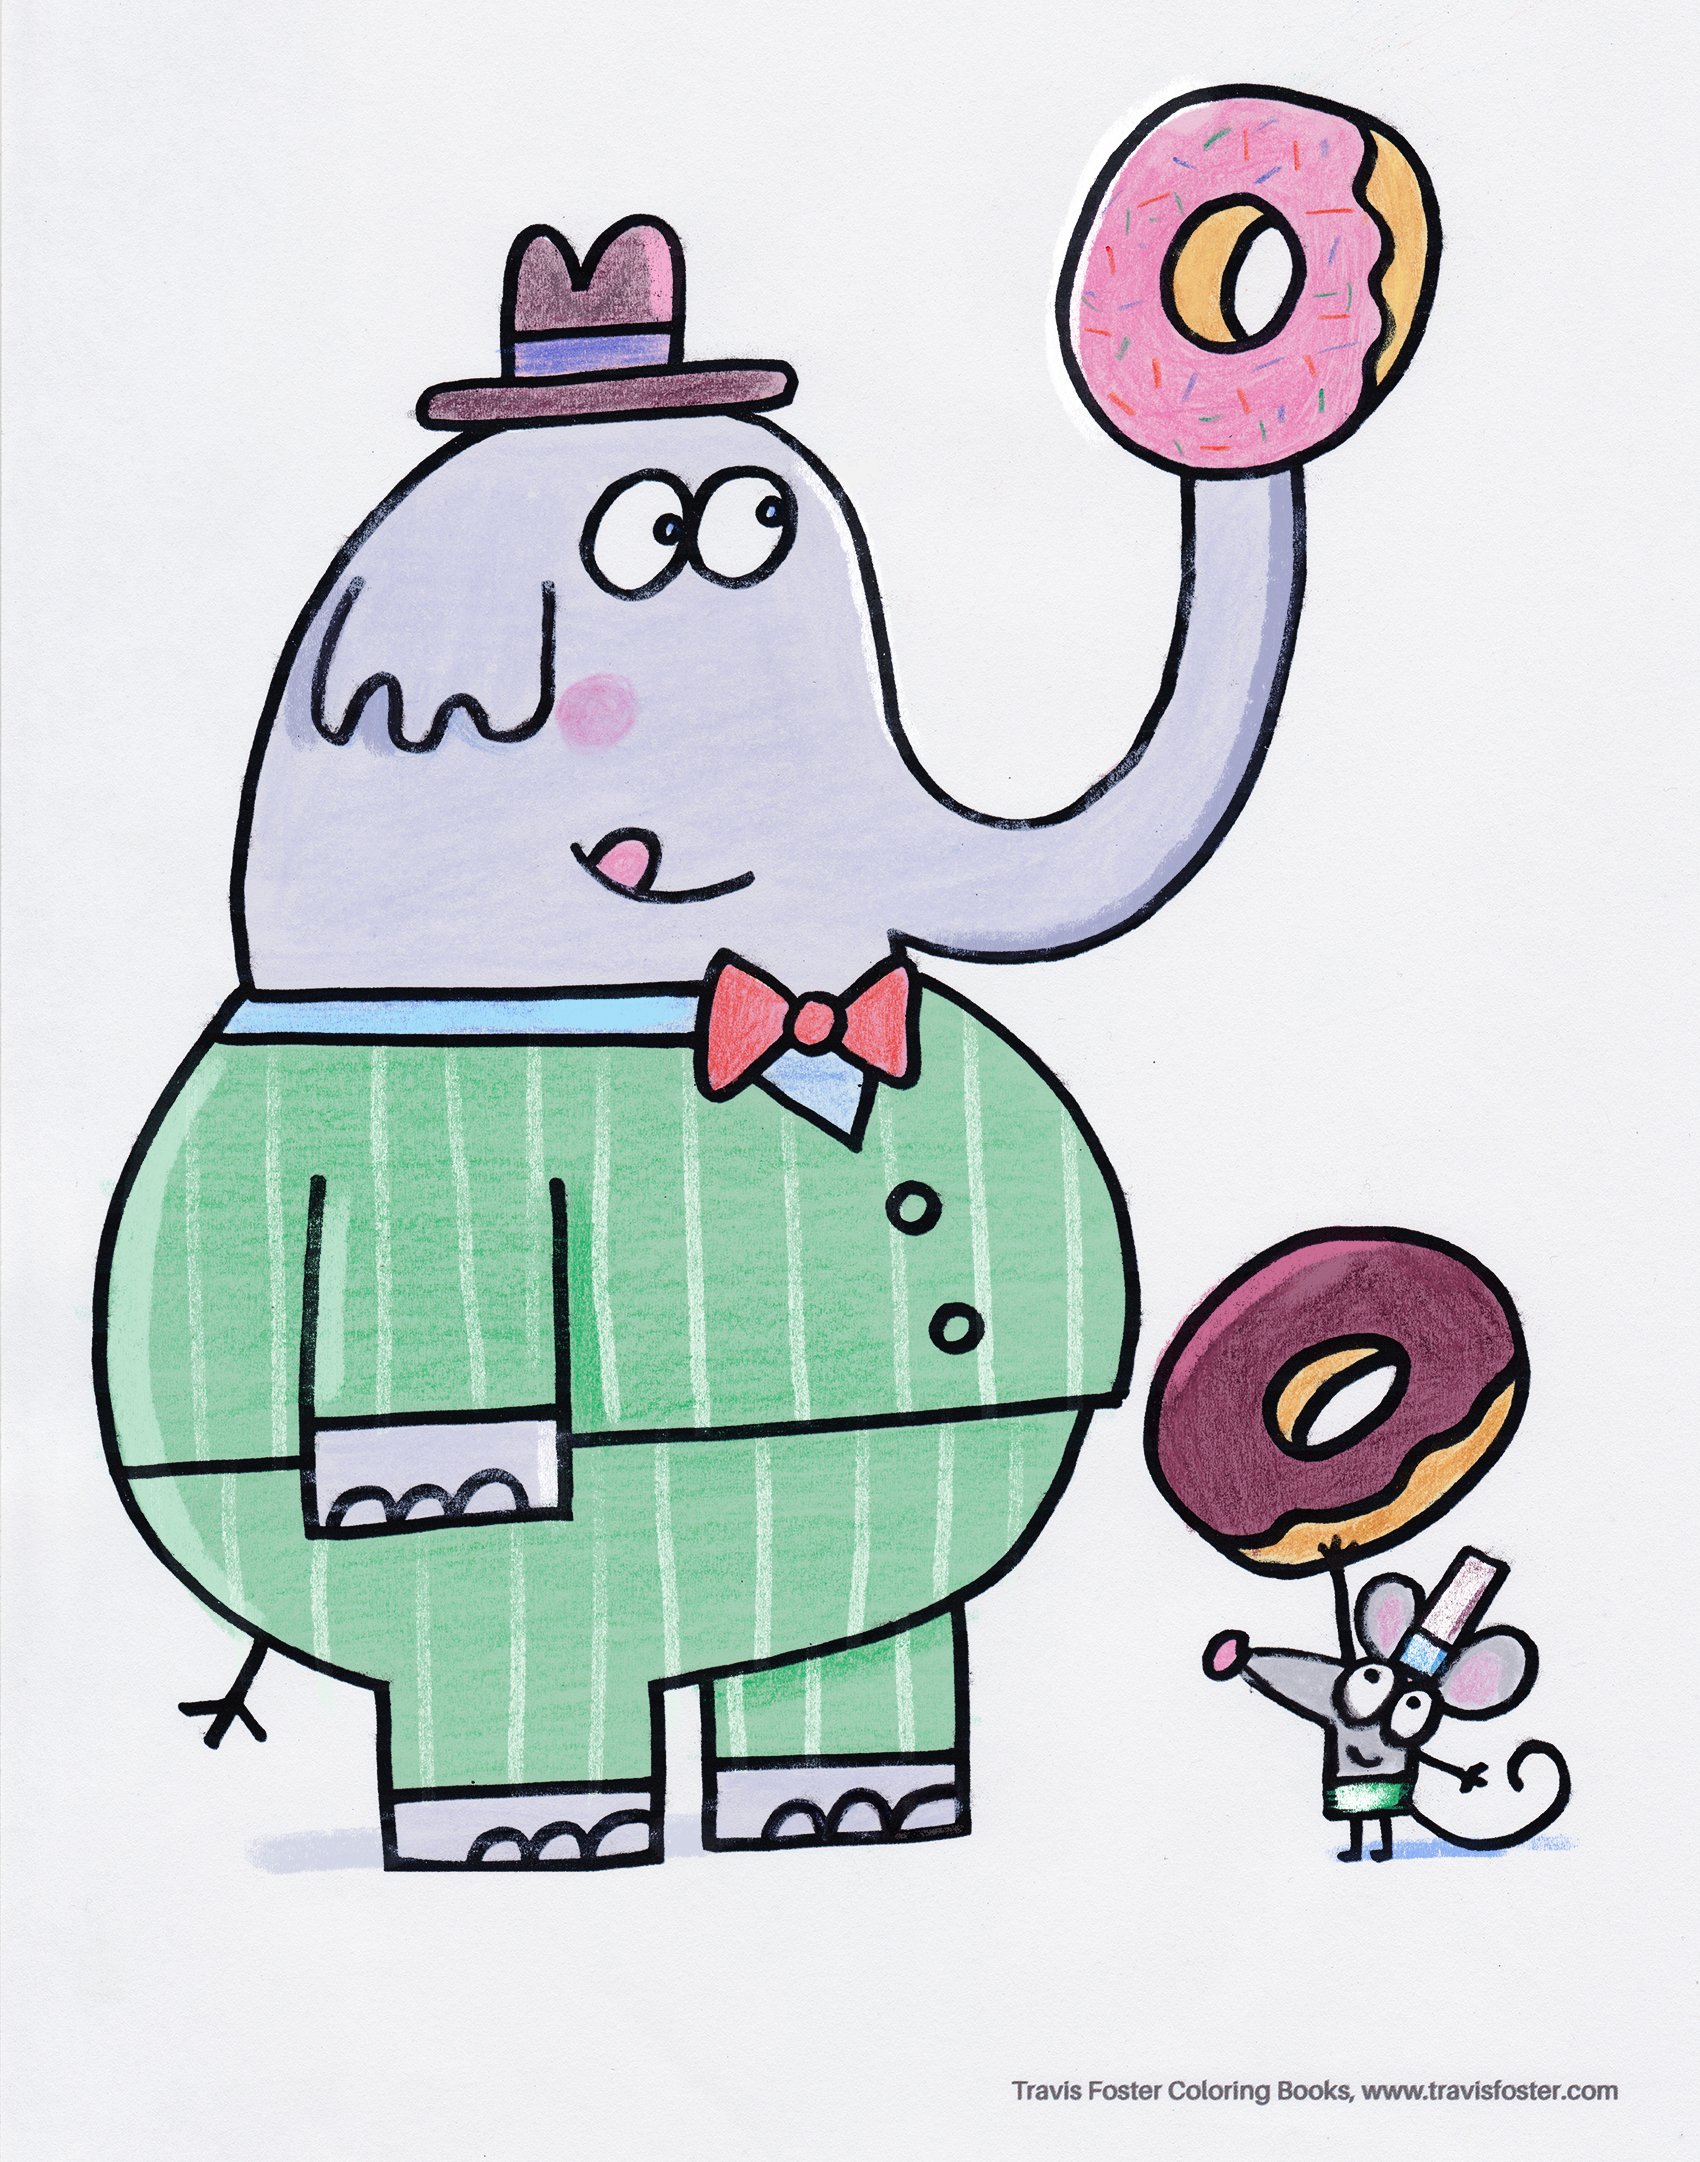 doughnut_elephant_colored copy.jpg